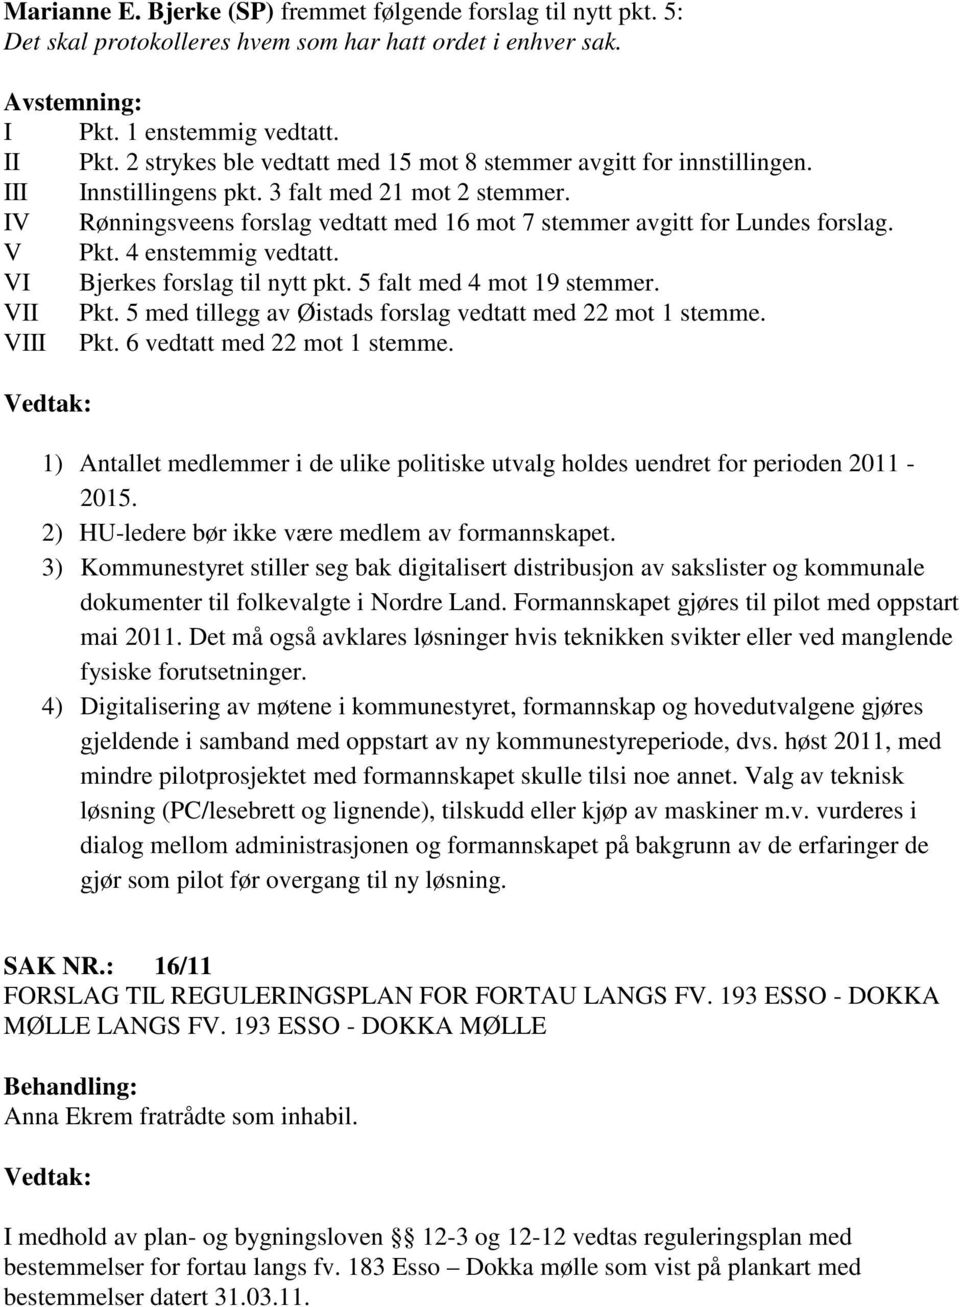 IV Rønningsveens forslag vedtatt med 16 mot 7 stemmer avgitt for Lundes forslag. V Pkt. 4 enstemmig vedtatt. VI Bjerkes forslag til nytt pkt. 5 falt med 4 mot 19 stemmer. VII Pkt.